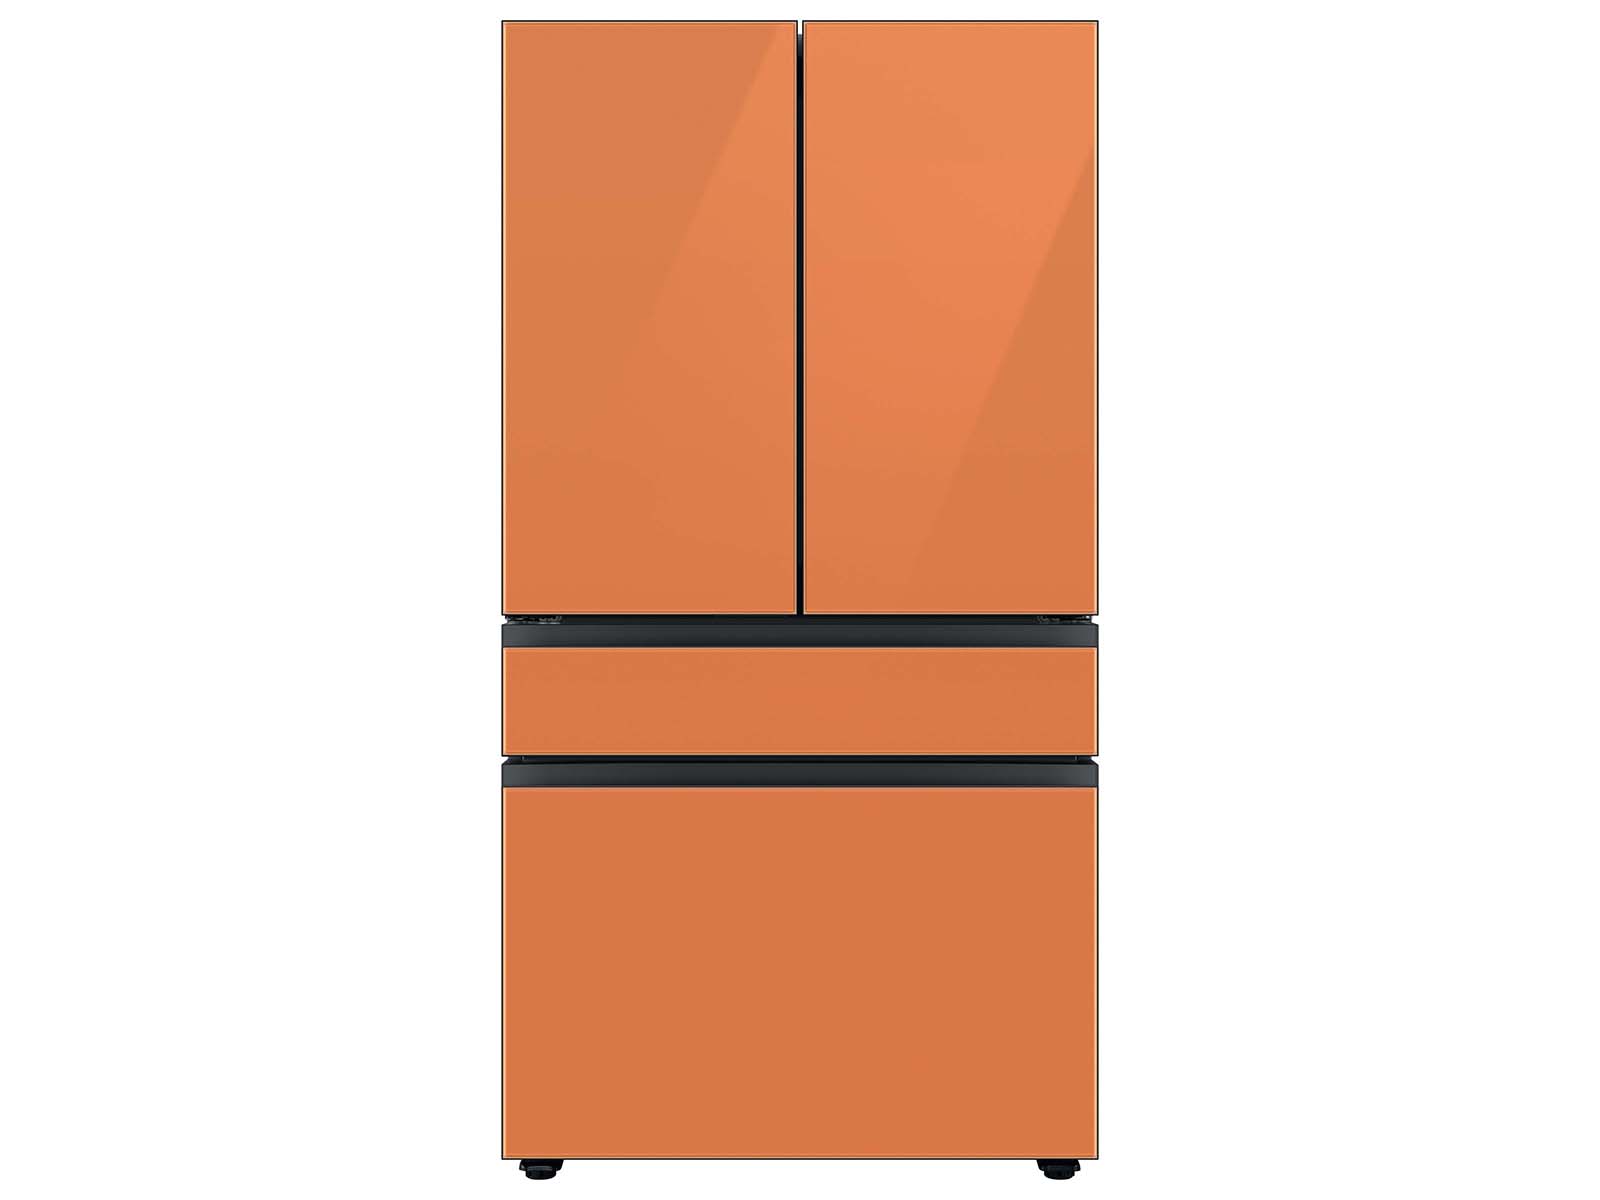 Bespoke 4-Door French Door Refrigerator (23 cu. ft.) with Customizable Door Panel Colors and Beverage Center™ in Clementine Glass